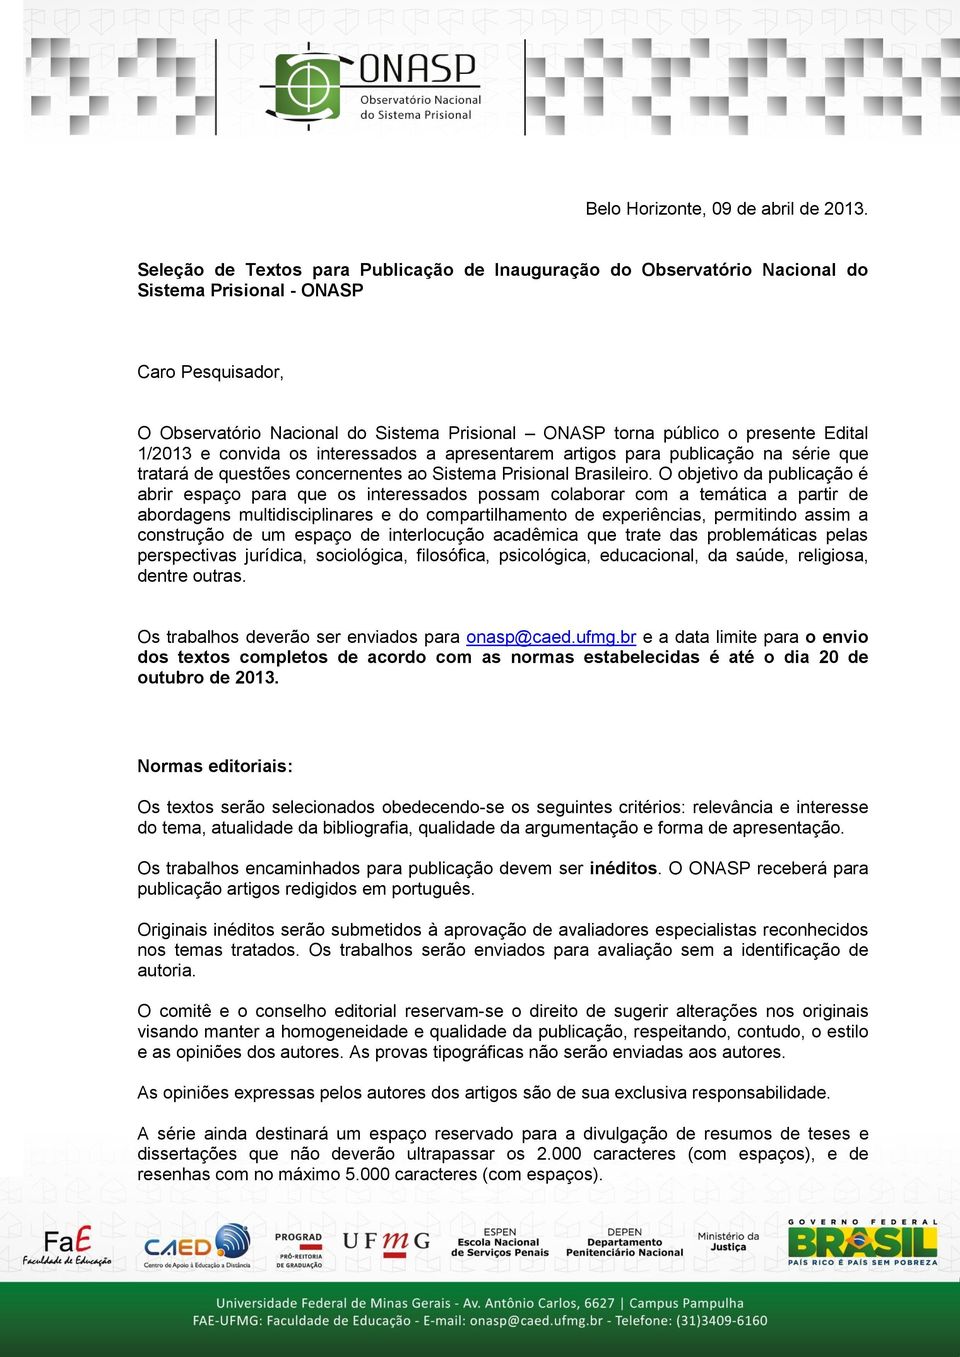 Edital 1/2013 e convida os interessados a apresentarem artigos para publicação na série que tratará de questões concernentes ao Sistema Prisional Brasileiro.